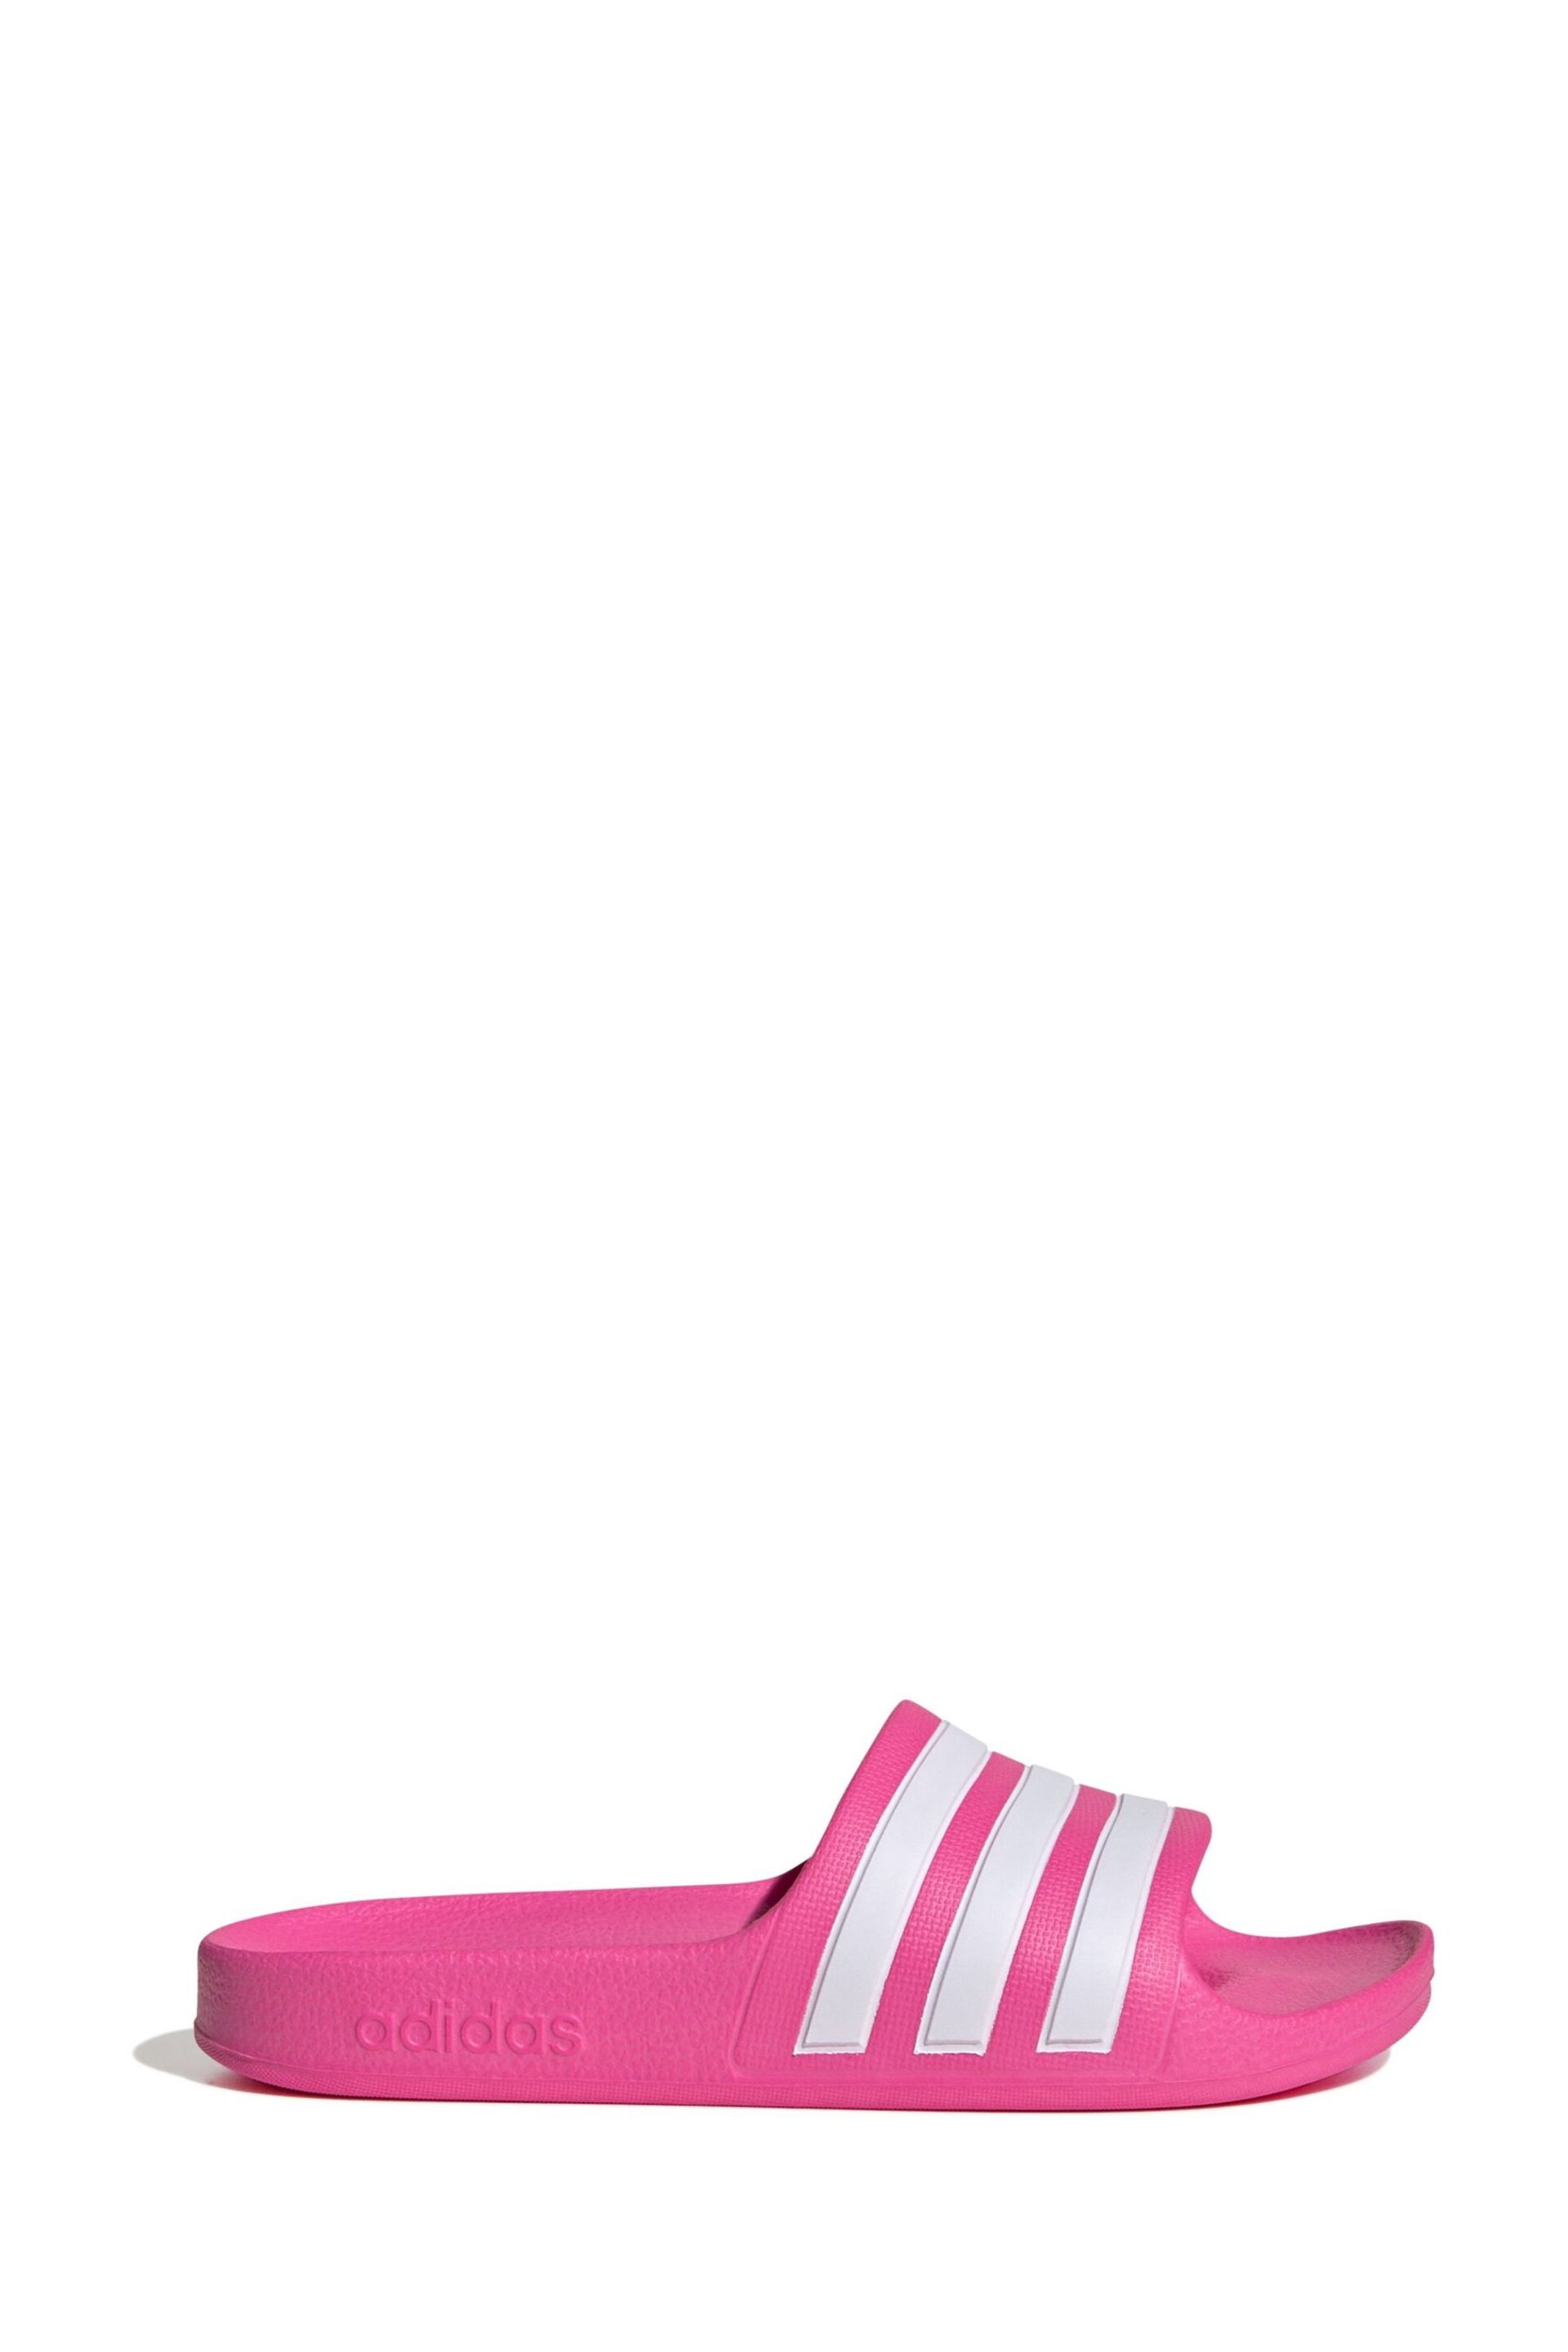 adidas Pink Adilette Aqua Kids Sandals - Image 1 of 6